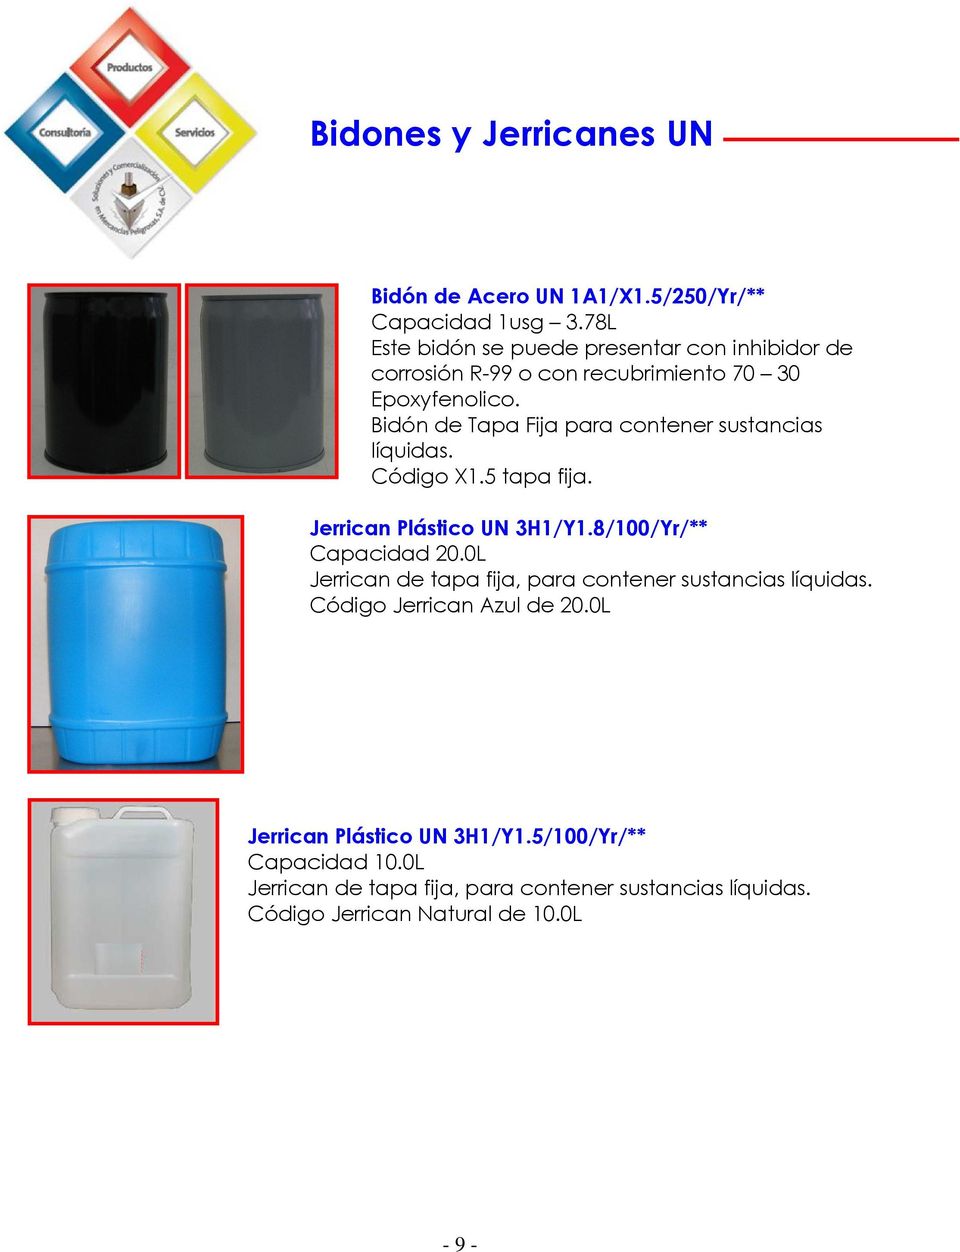 Bidón de Tapa Fija para contener sustancias líquidas. Código X1.5 tapa fija. Jerrican Plástico UN 3H1/Y1.8/100/Yr/** Capacidad 20.